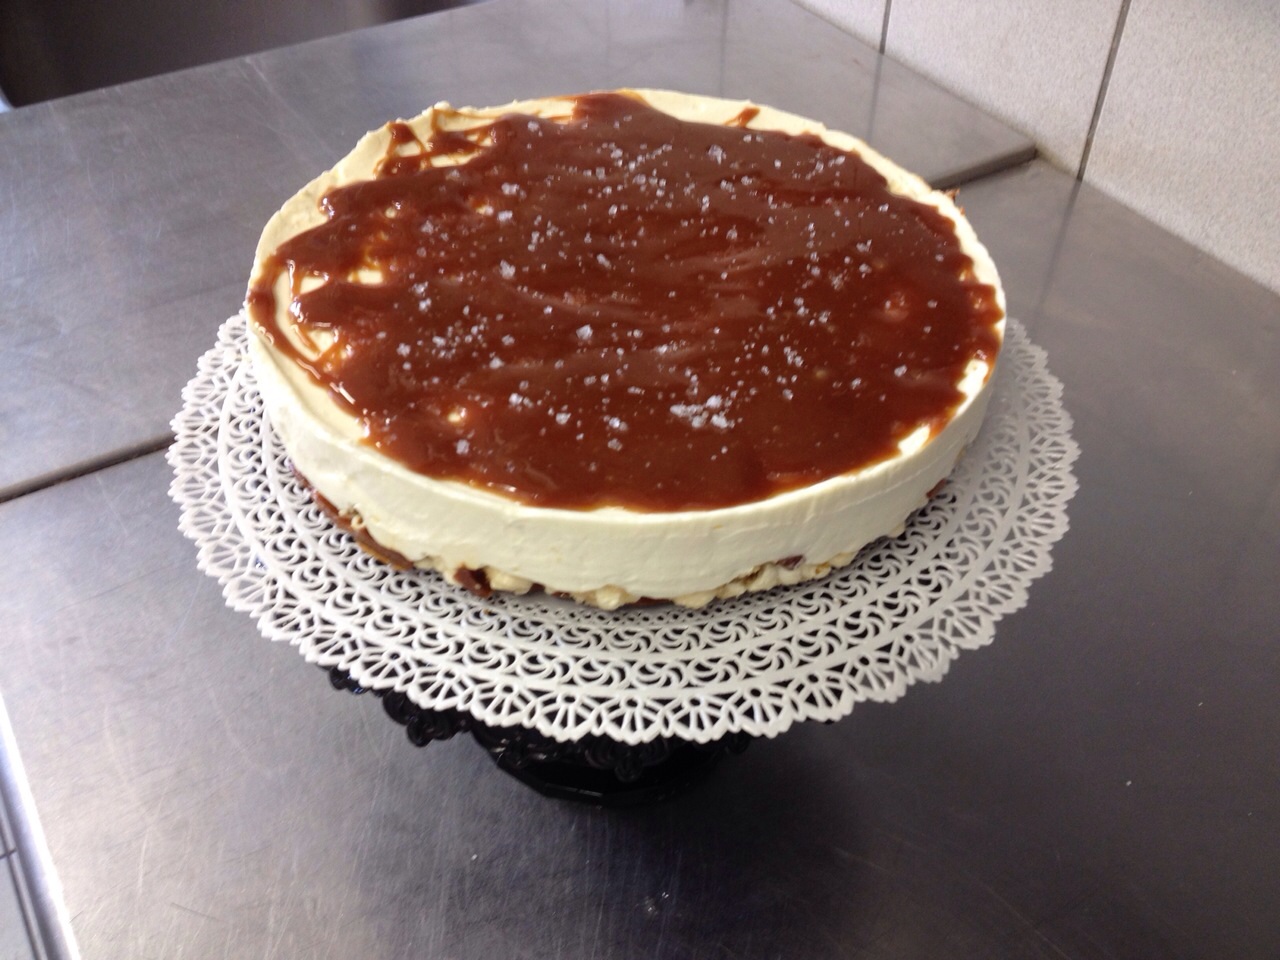 Cheesecake a freddo con base di mais scoppiato caramellato e copertura al caramello salato1